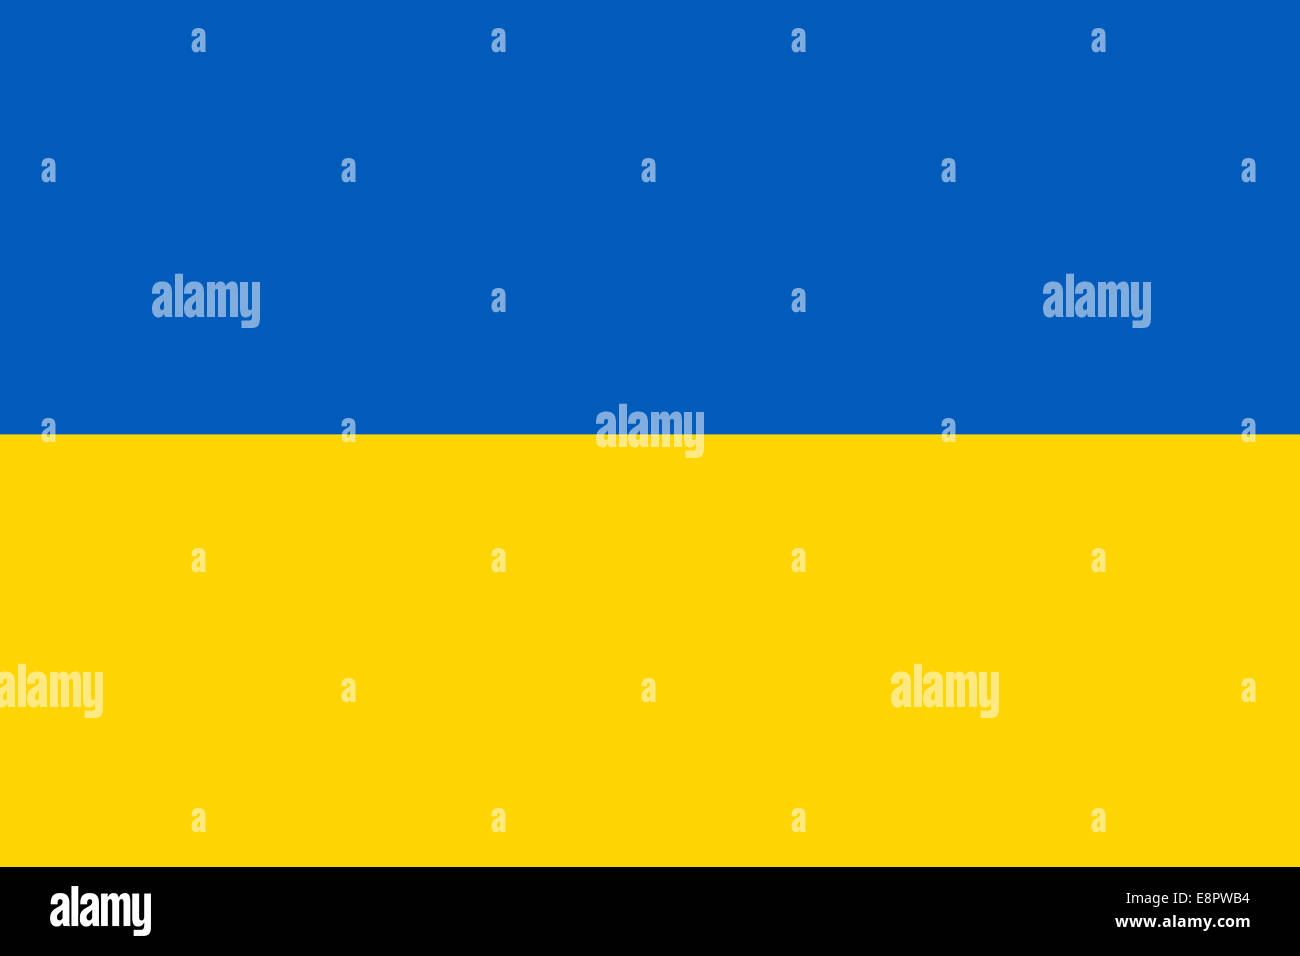 Drapeau de l'Ukraine - Rapport standard du drapeau ukrainien - mode couleur RVB réel Banque D'Images